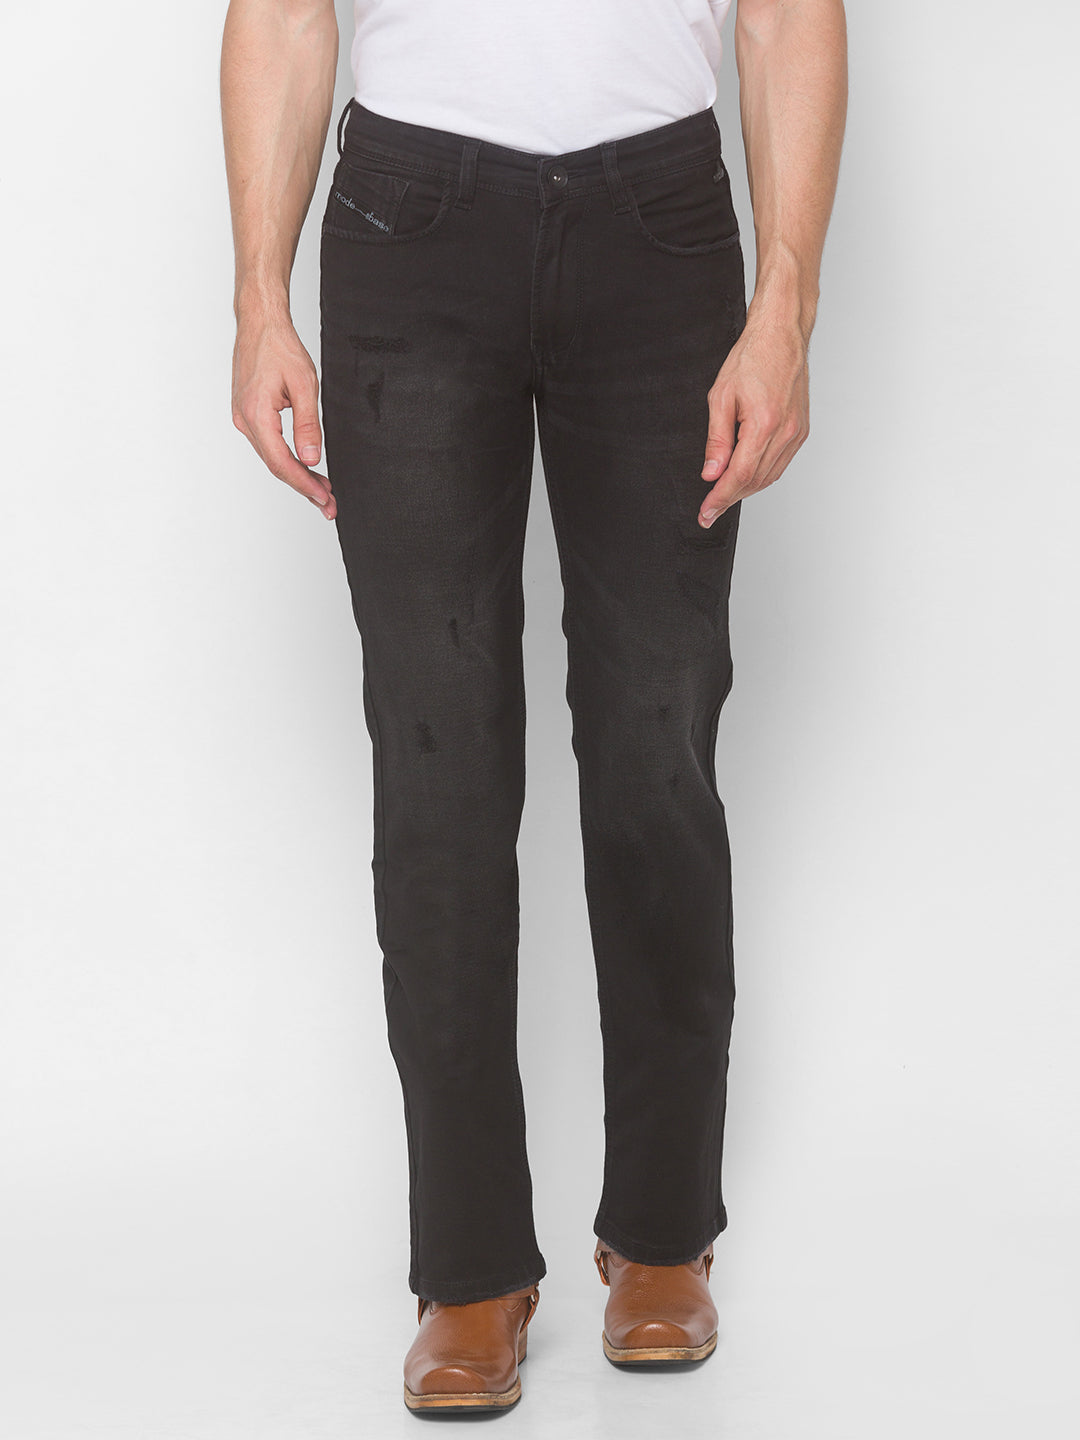 Carbon Black Bootcut Jeans